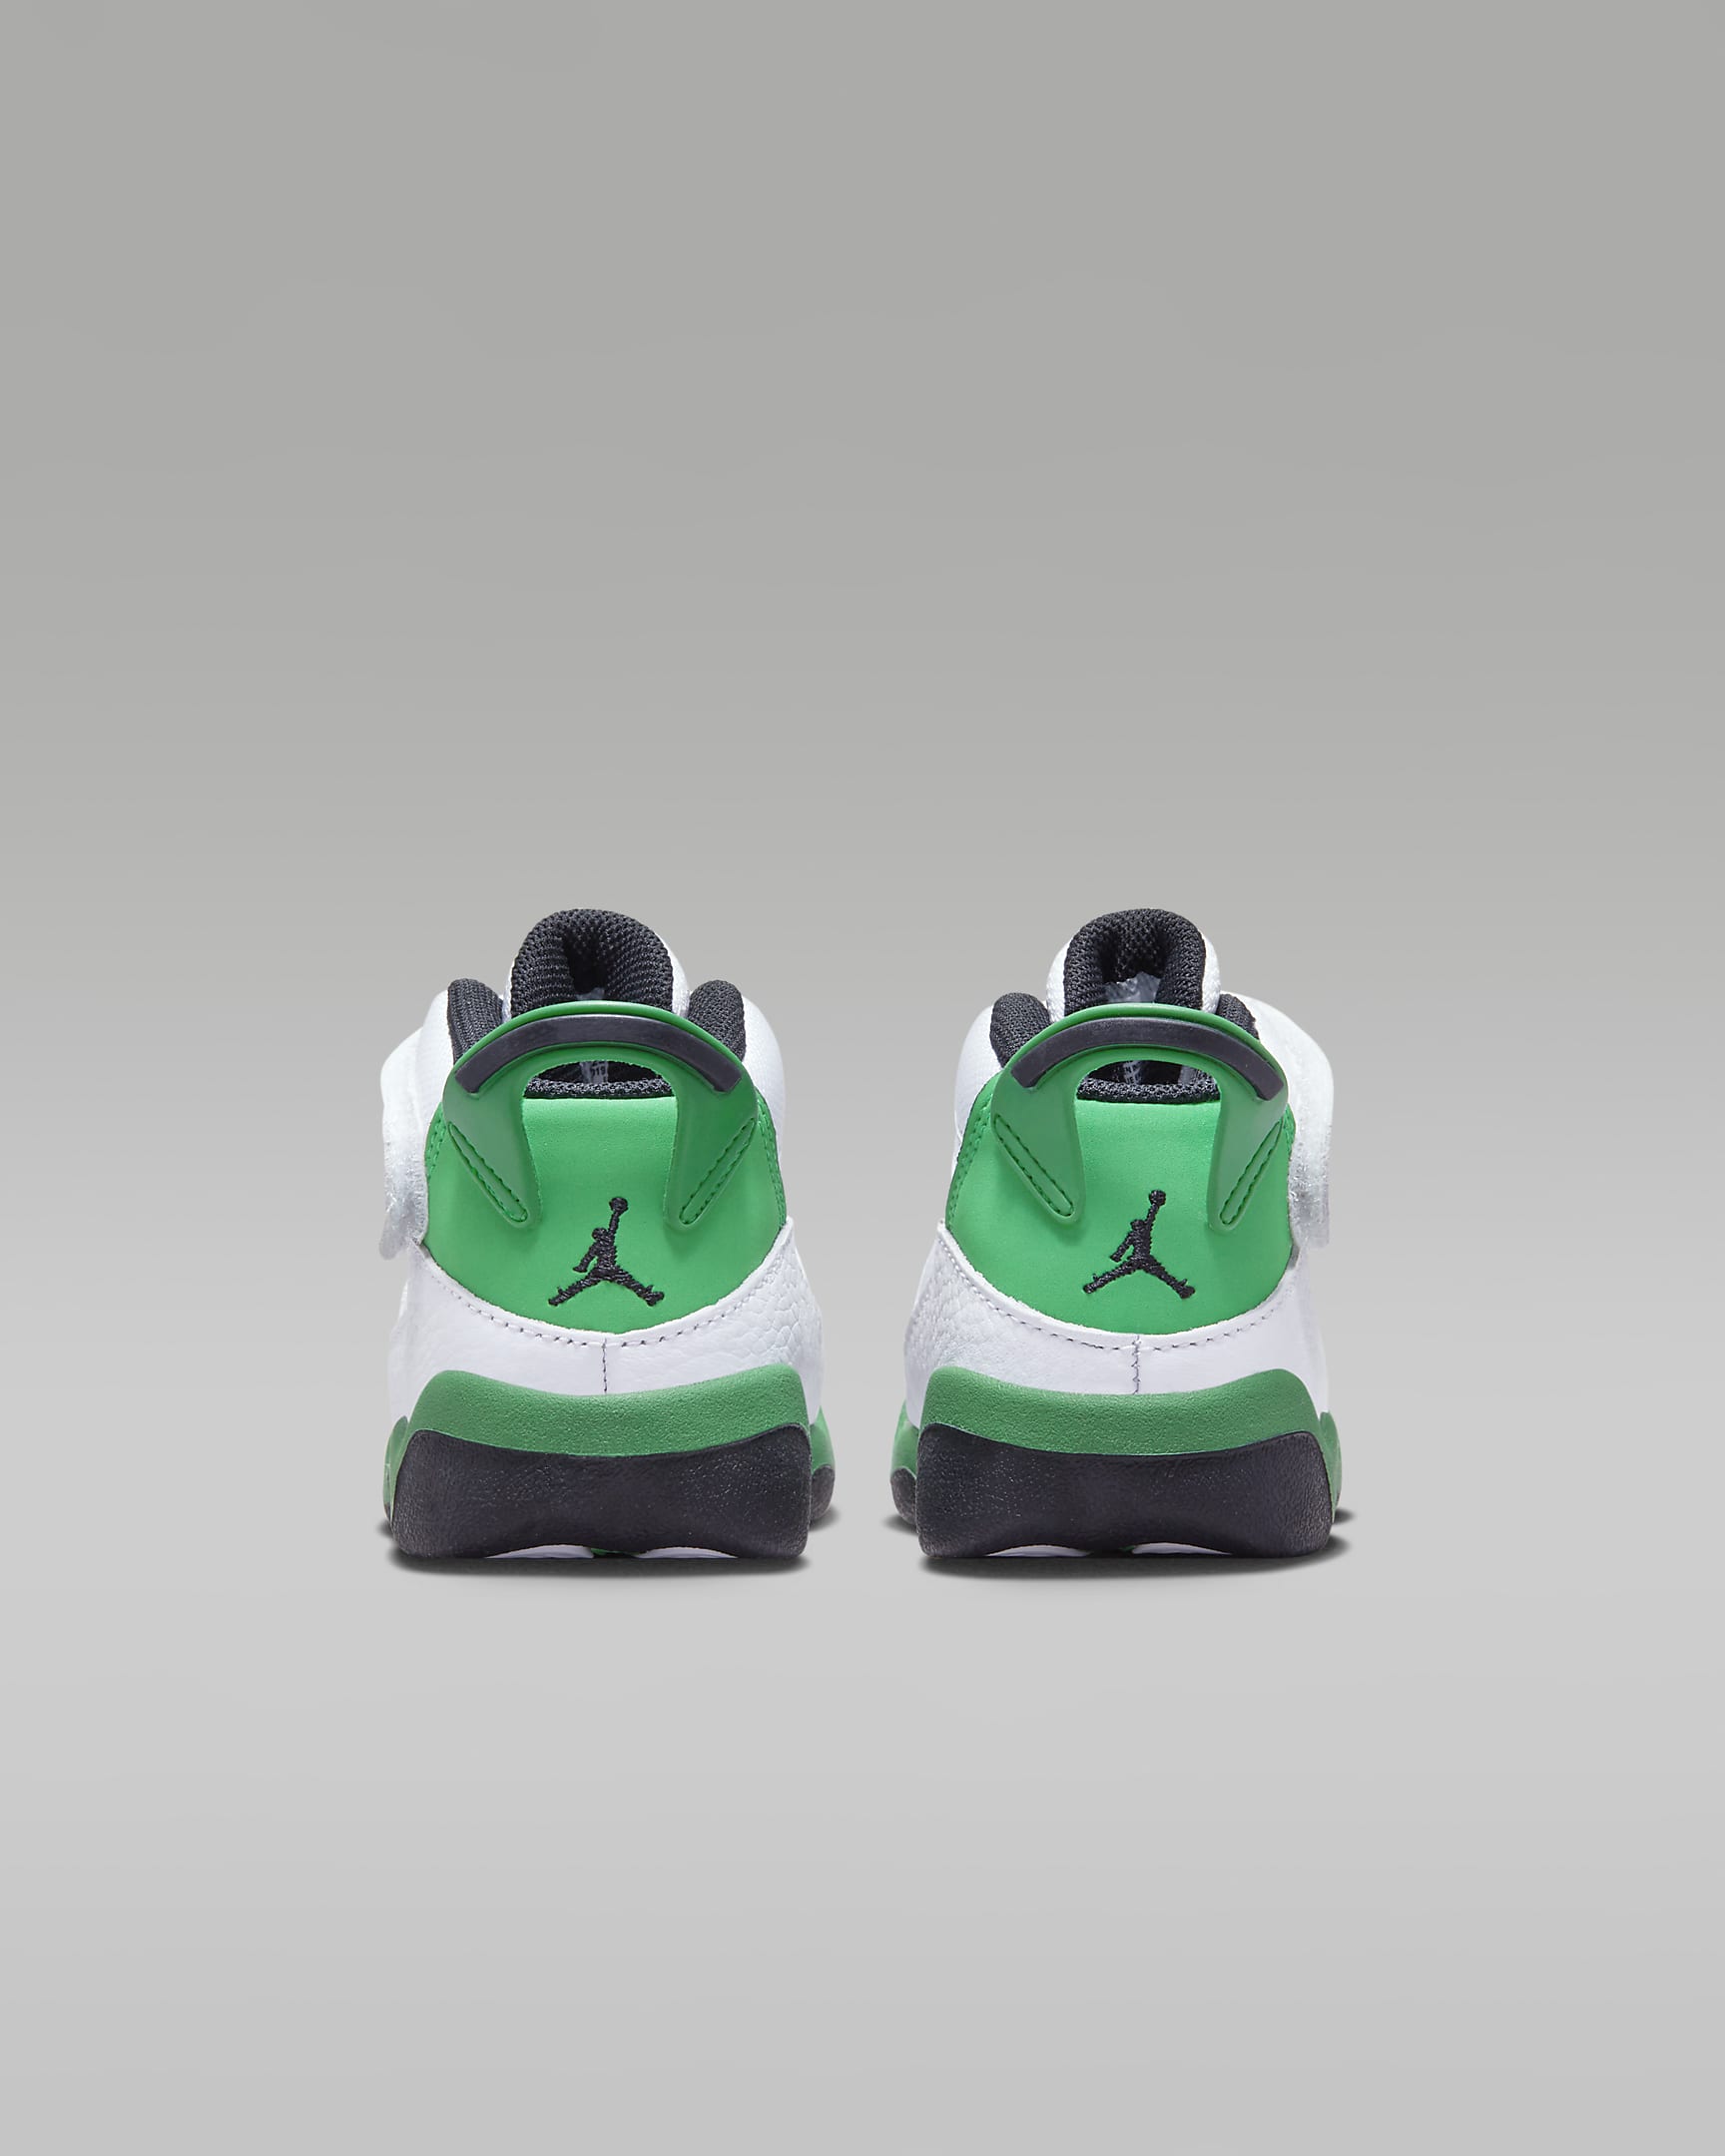 Jordan 6 Rings Baby/Toddler Shoes. Nike.com